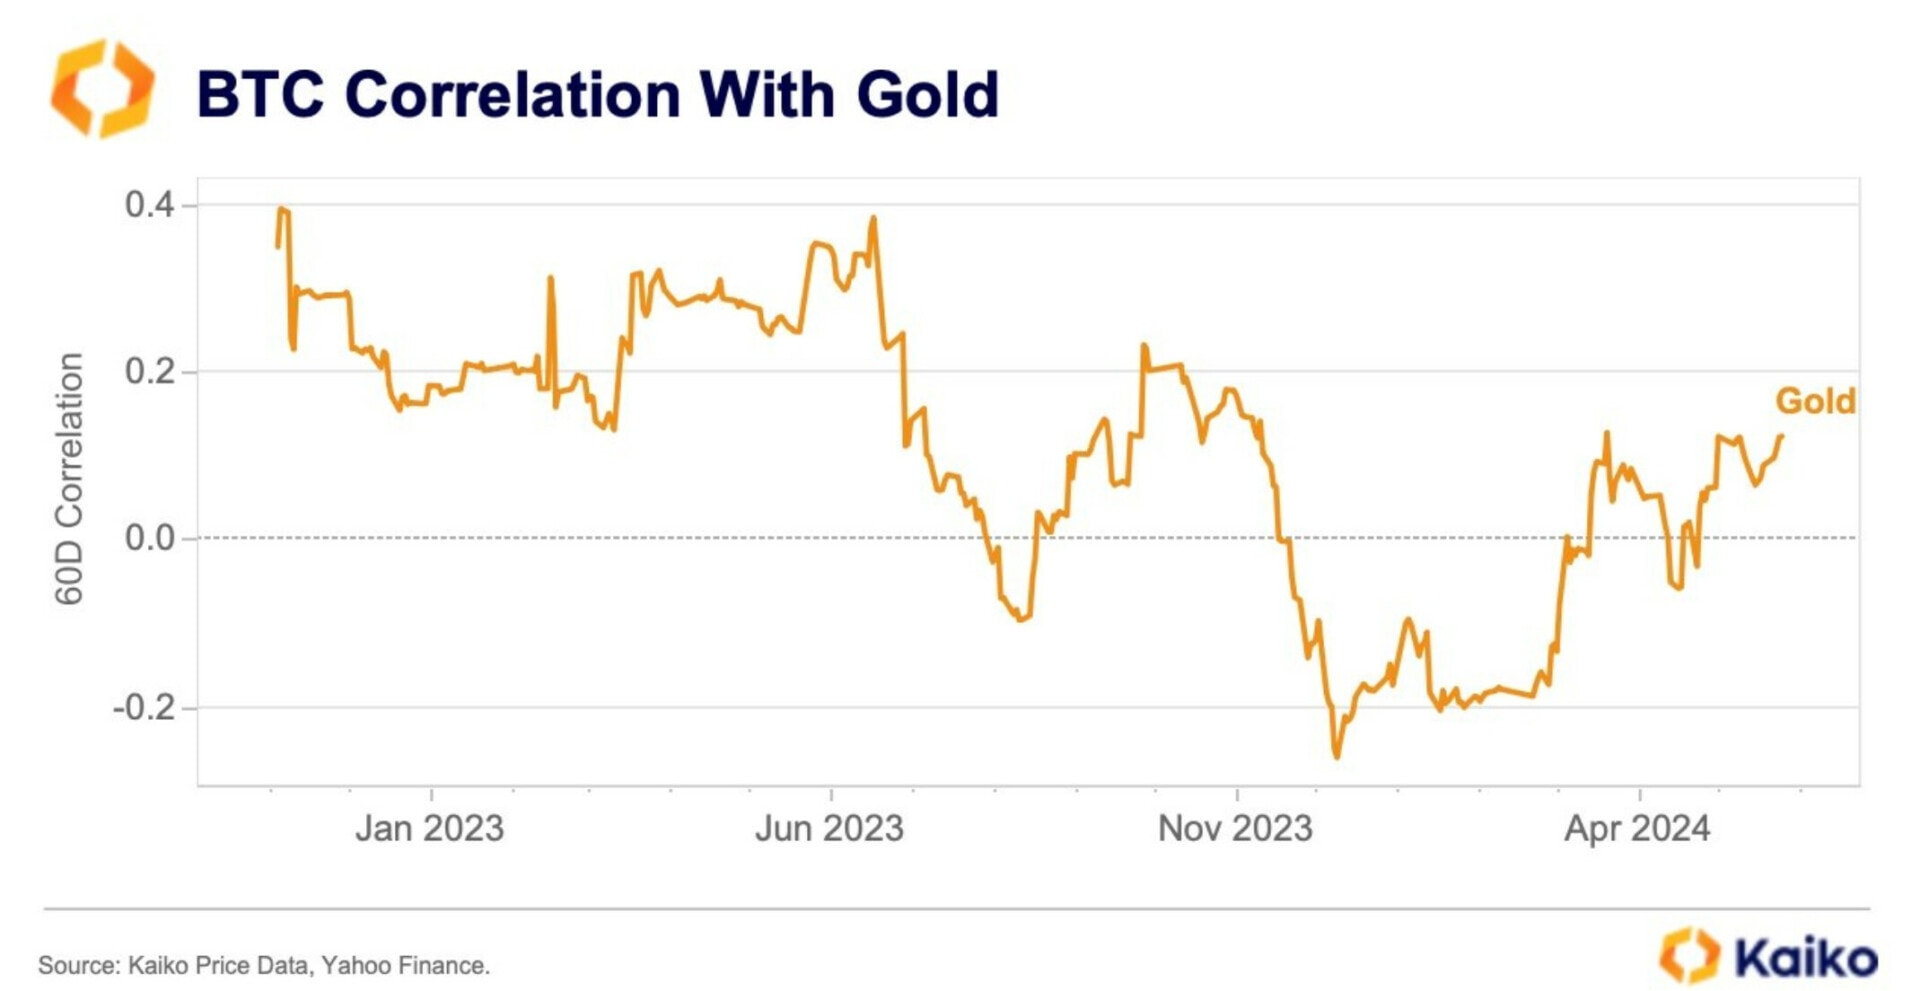 La corrélation entre le Bitcoin et l'or augmente depuis la fin de l'année 2023 - 4 juin 2024. 